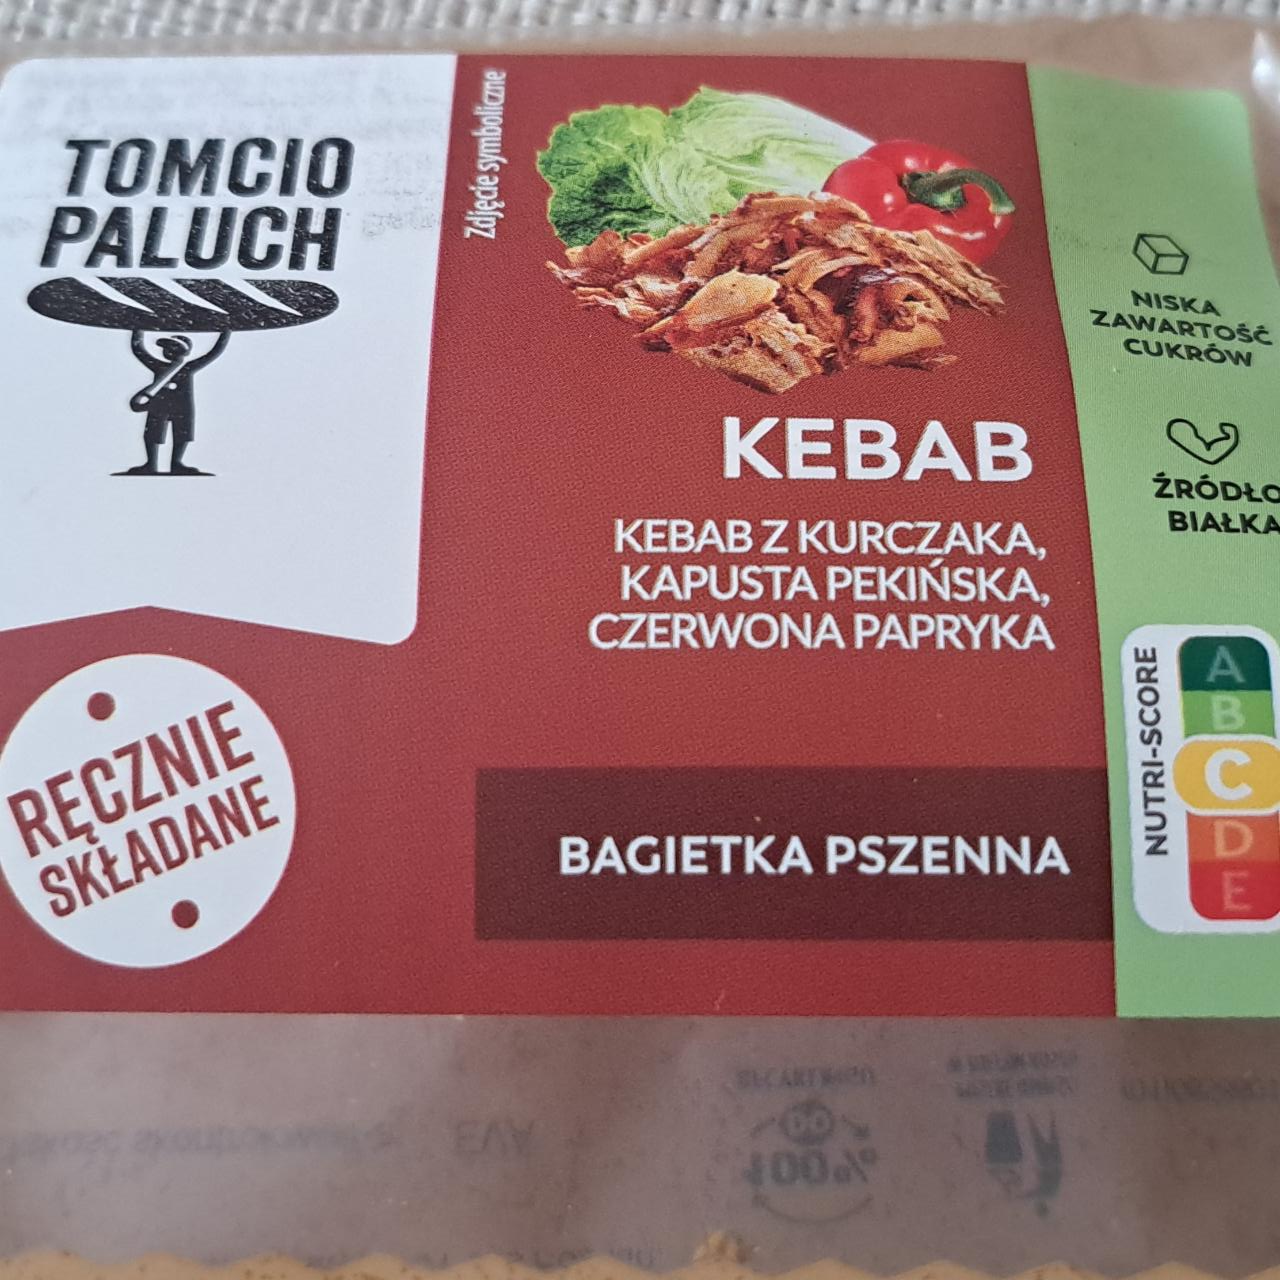 Zdjęcia - Bagietka pszenna kebab Tomcio paluch